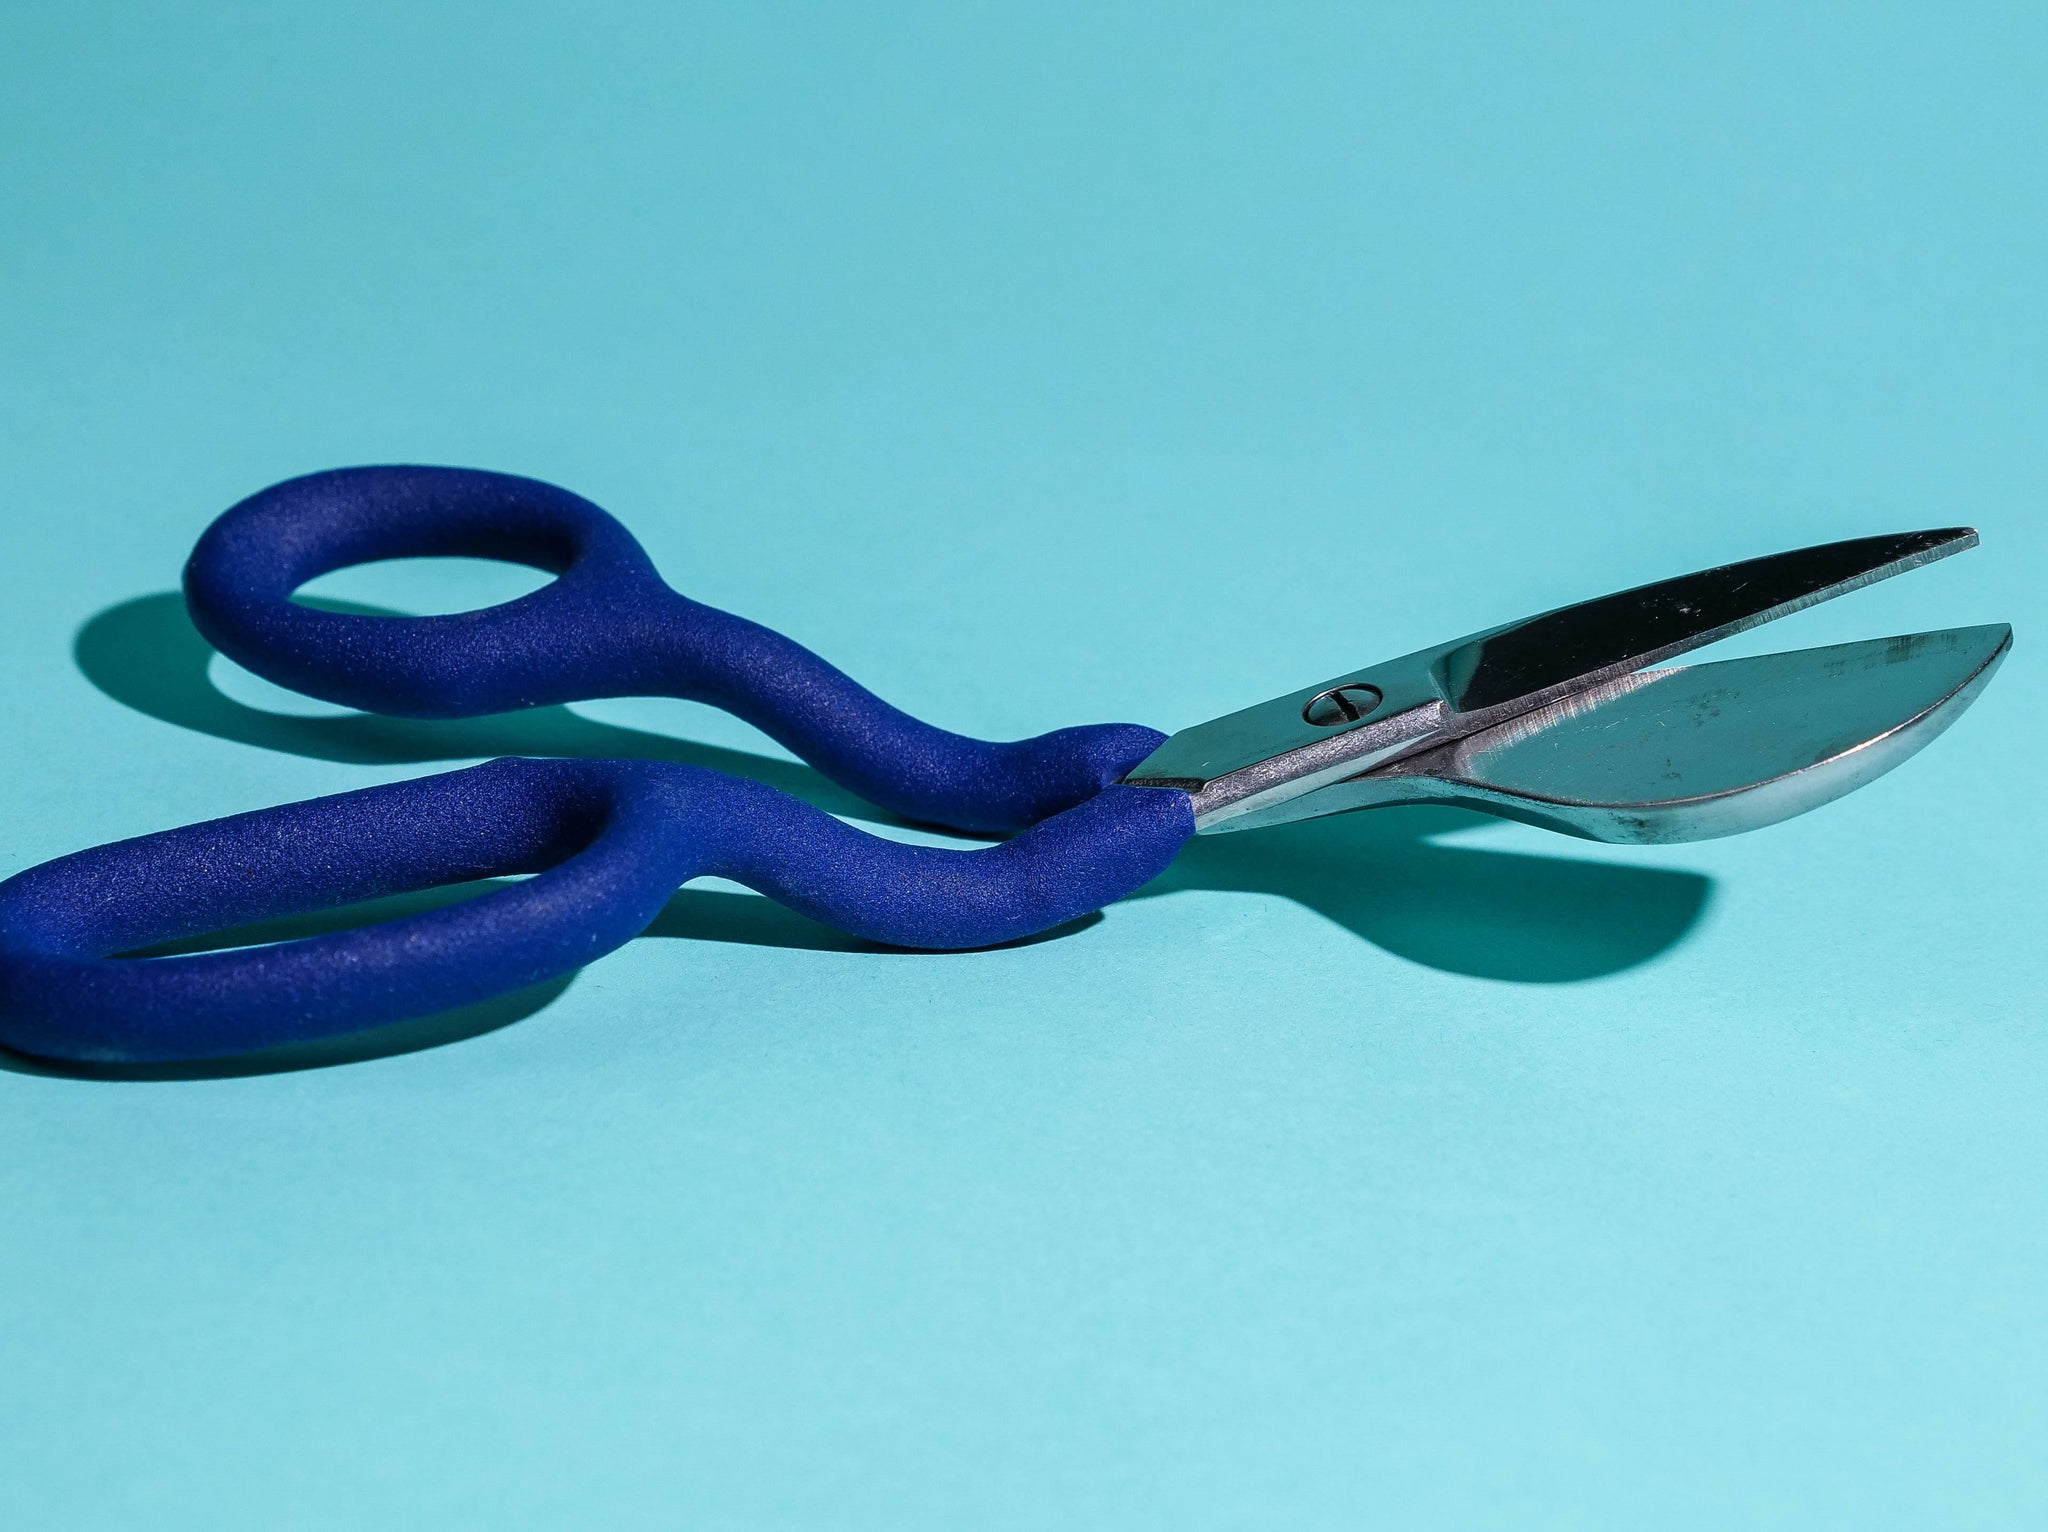 Duckbill Scissors Bent Cvd Embroidery Scissors+Thread Cutter Blue+